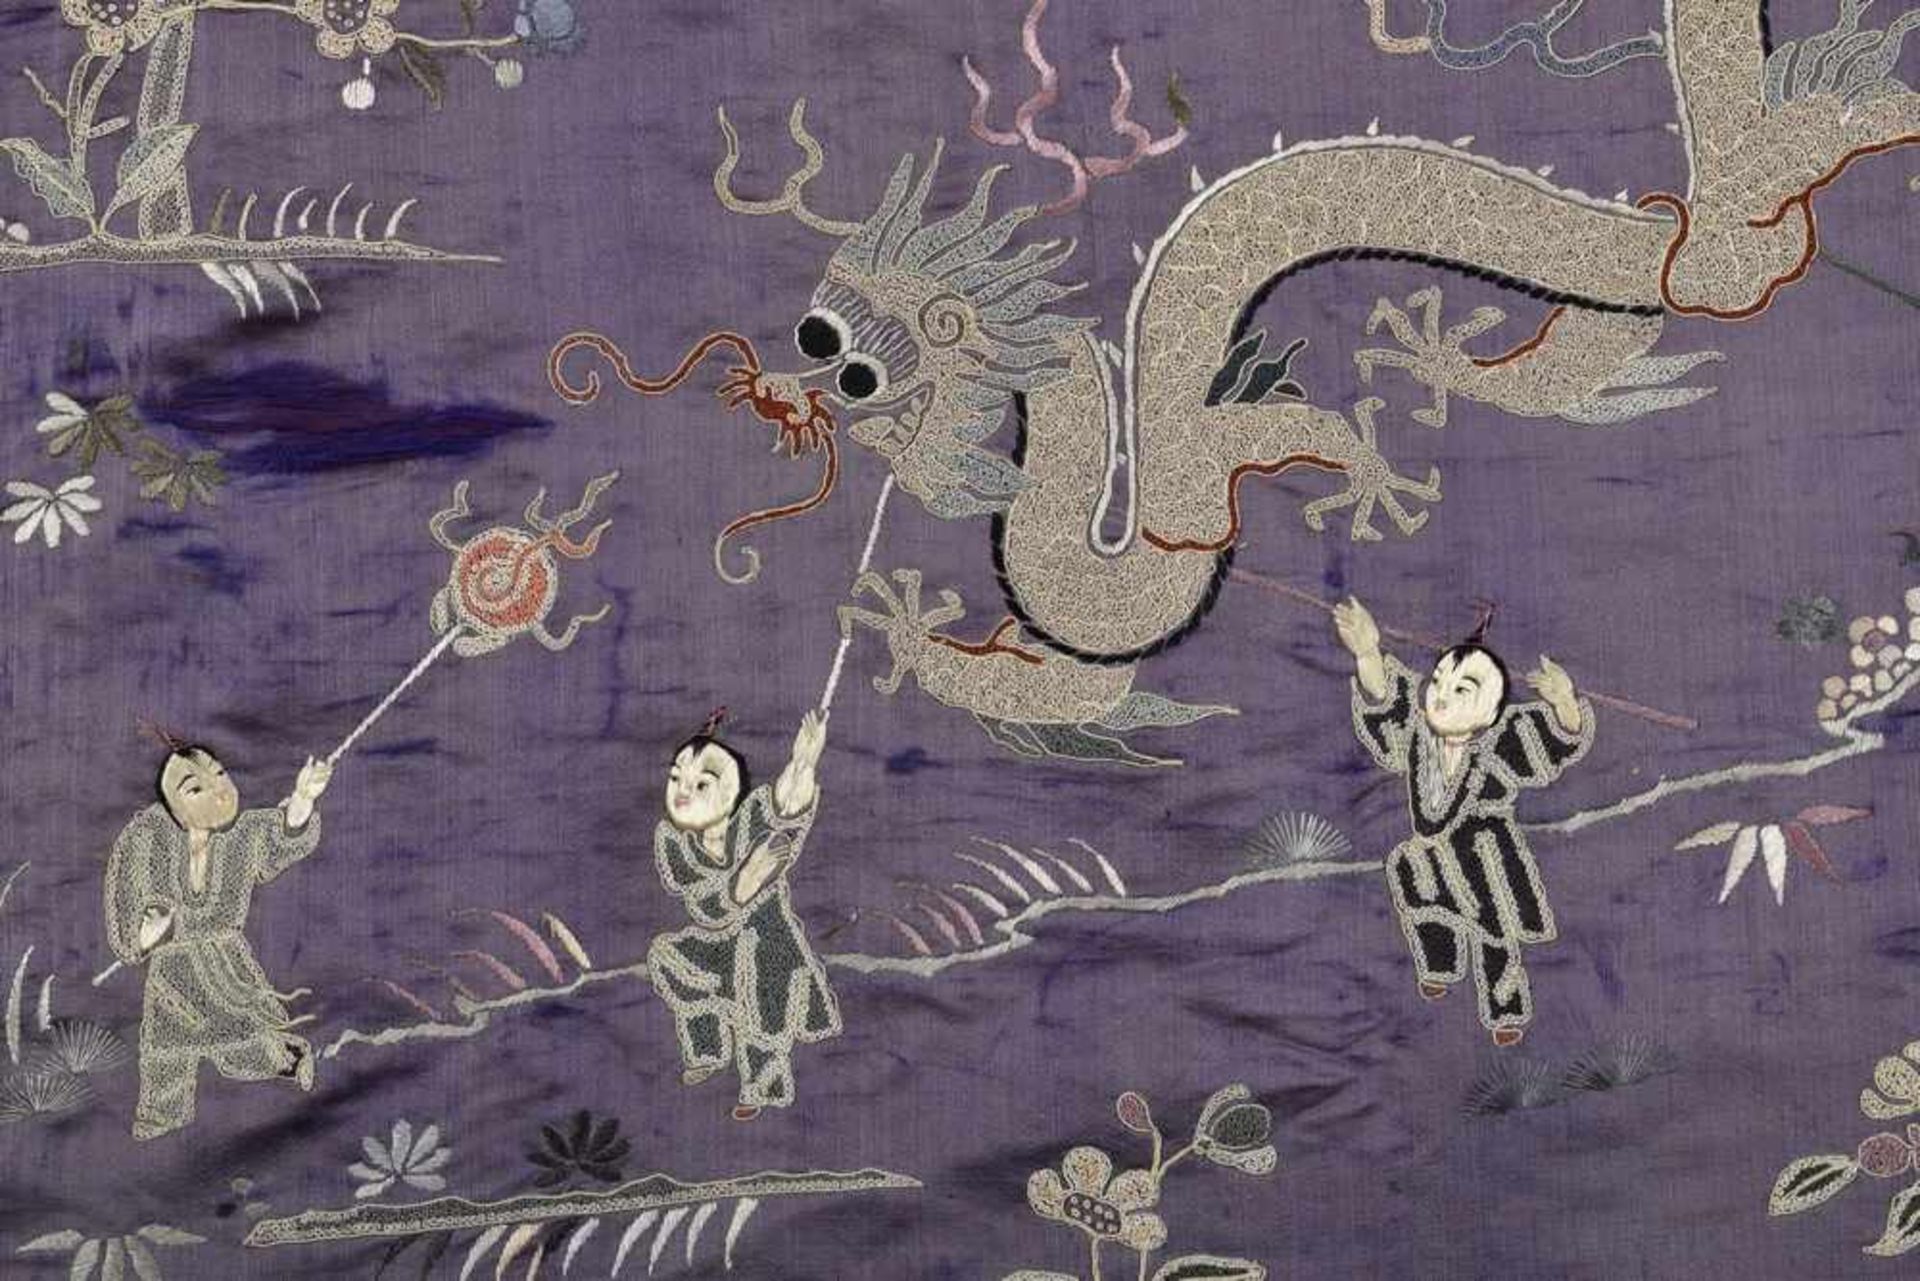 Chinesisches Textilfragment "Kinder und Drache", Seide bestickt, 154x75cm, mürbe/ausgeblichen - Bild 2 aus 4